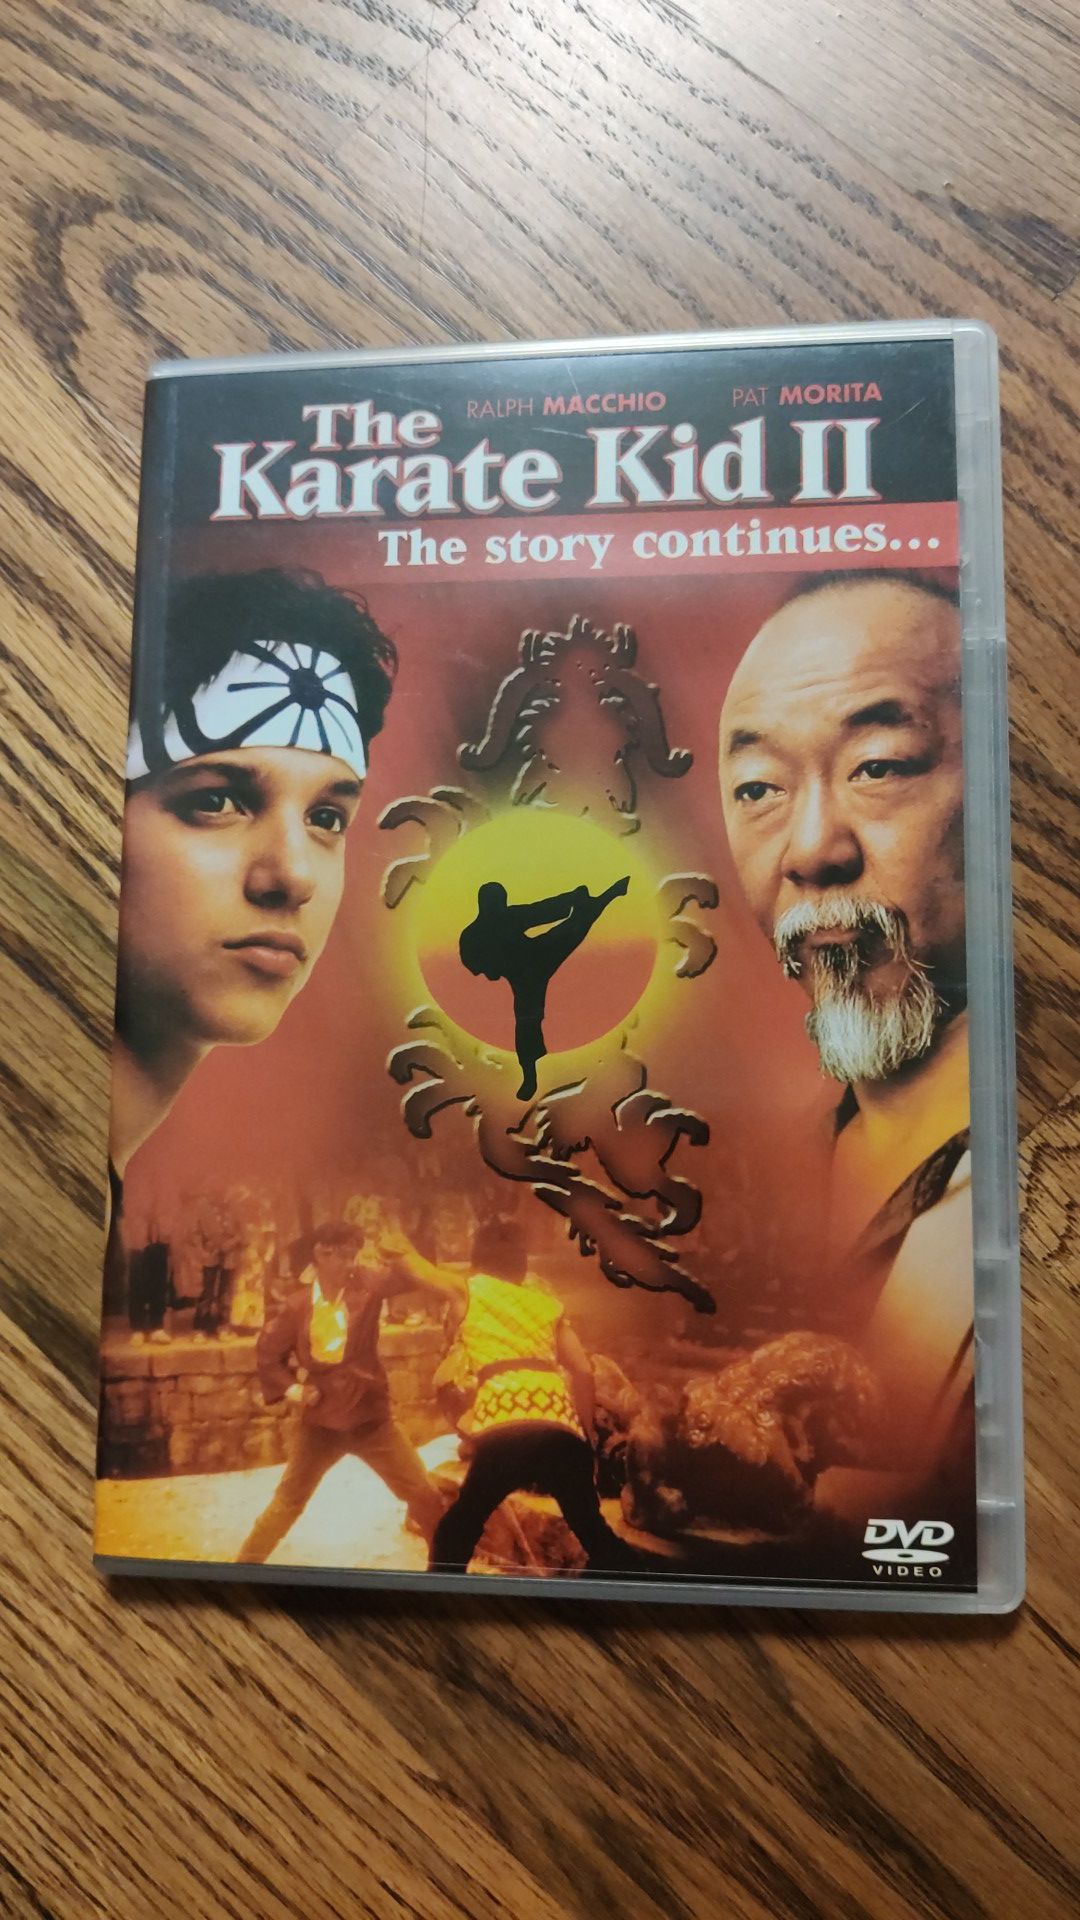 Karate Kid 2 on DVD